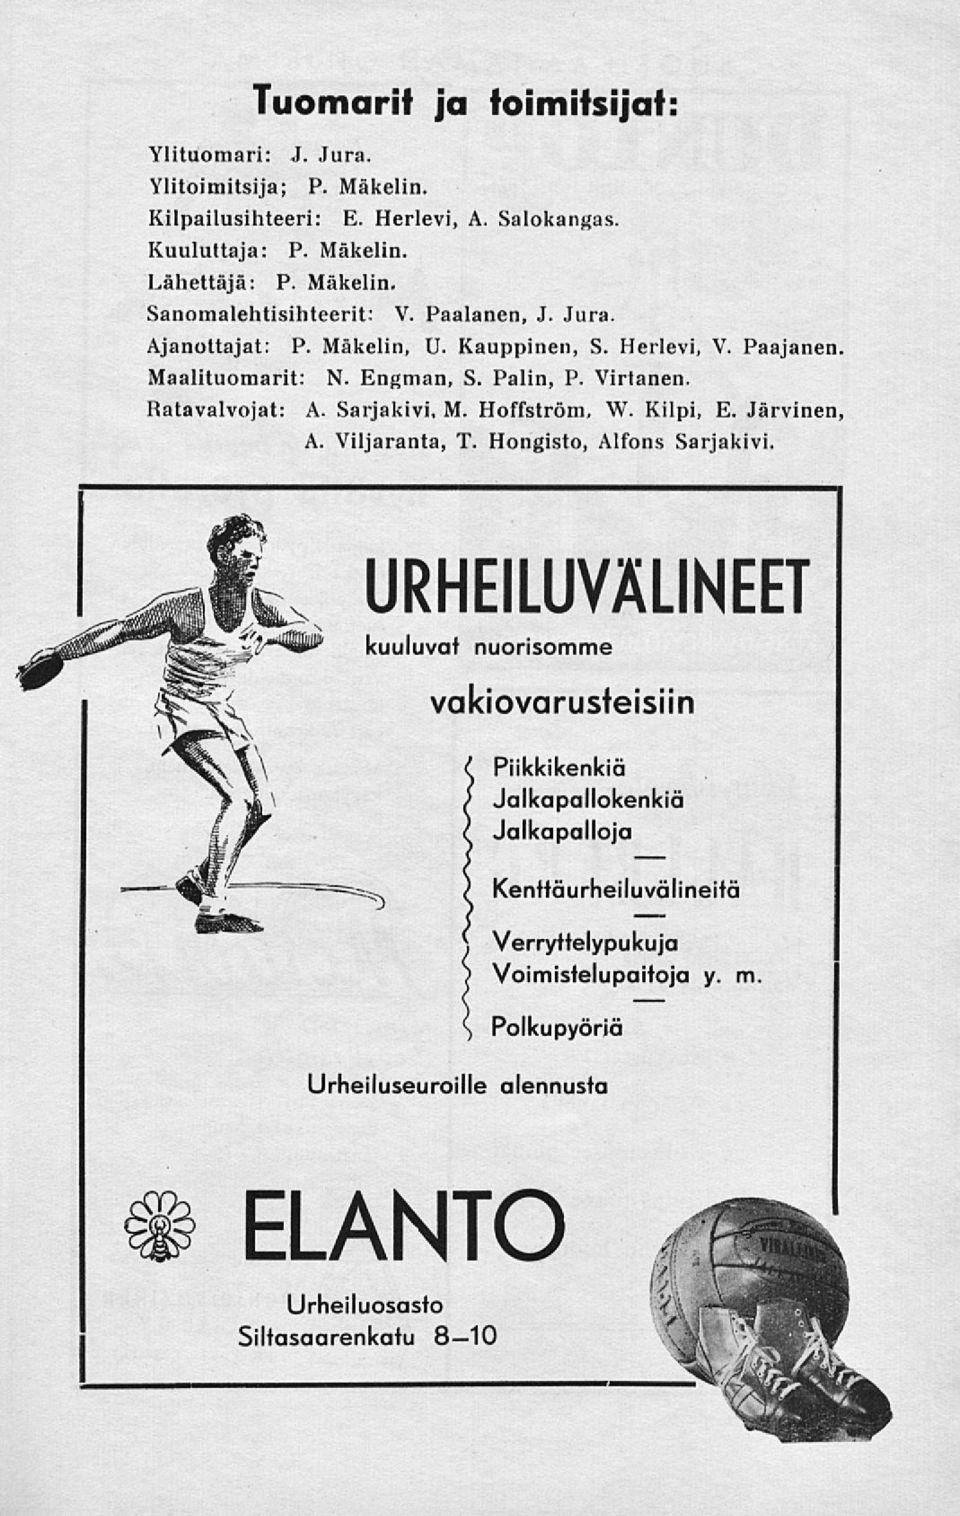 Hoffström, W. Kilpi, E. Järvinen, A. Viljaranta, T. Hongisto, Alfons Sarjakivi.